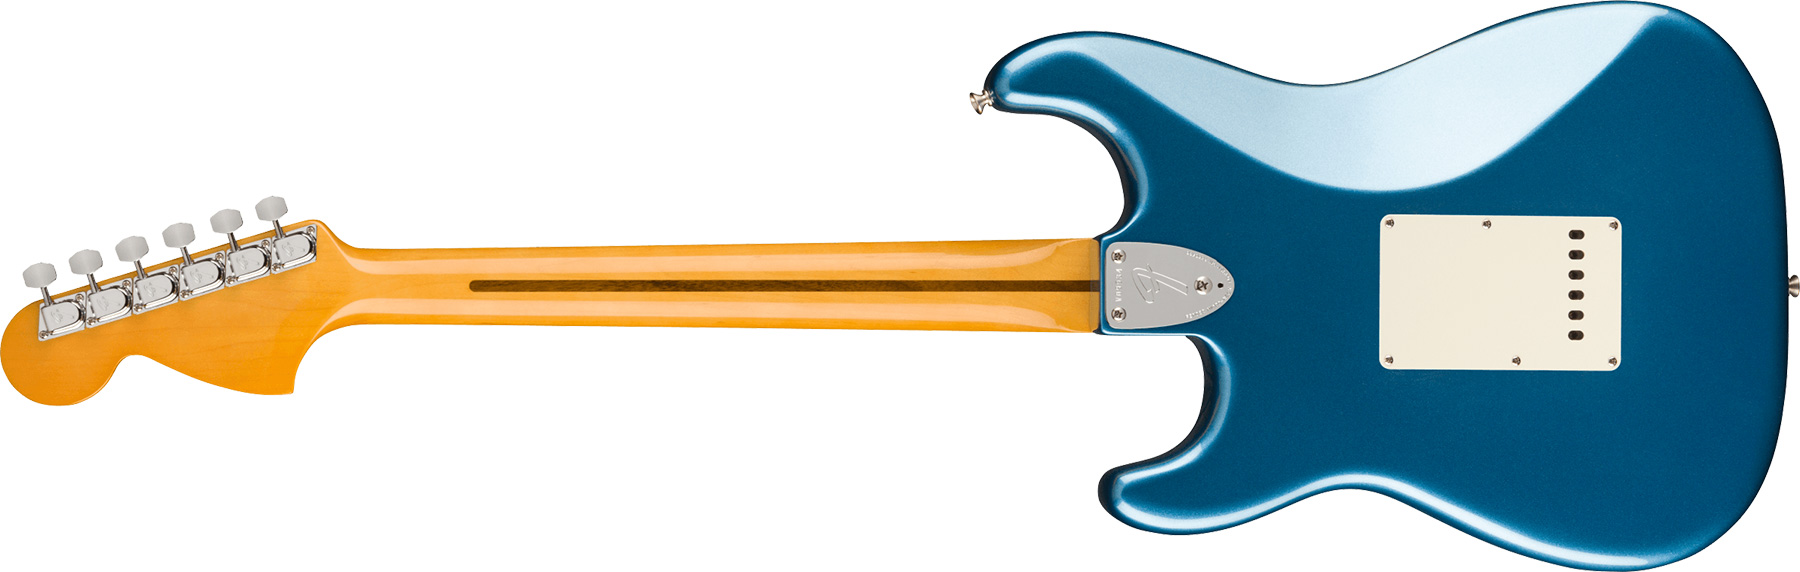 Fender Strat 1973 American Vintage Ii Usa 3s Trem Mn - Lake Placid Blue - Str shape electric guitar - Variation 1